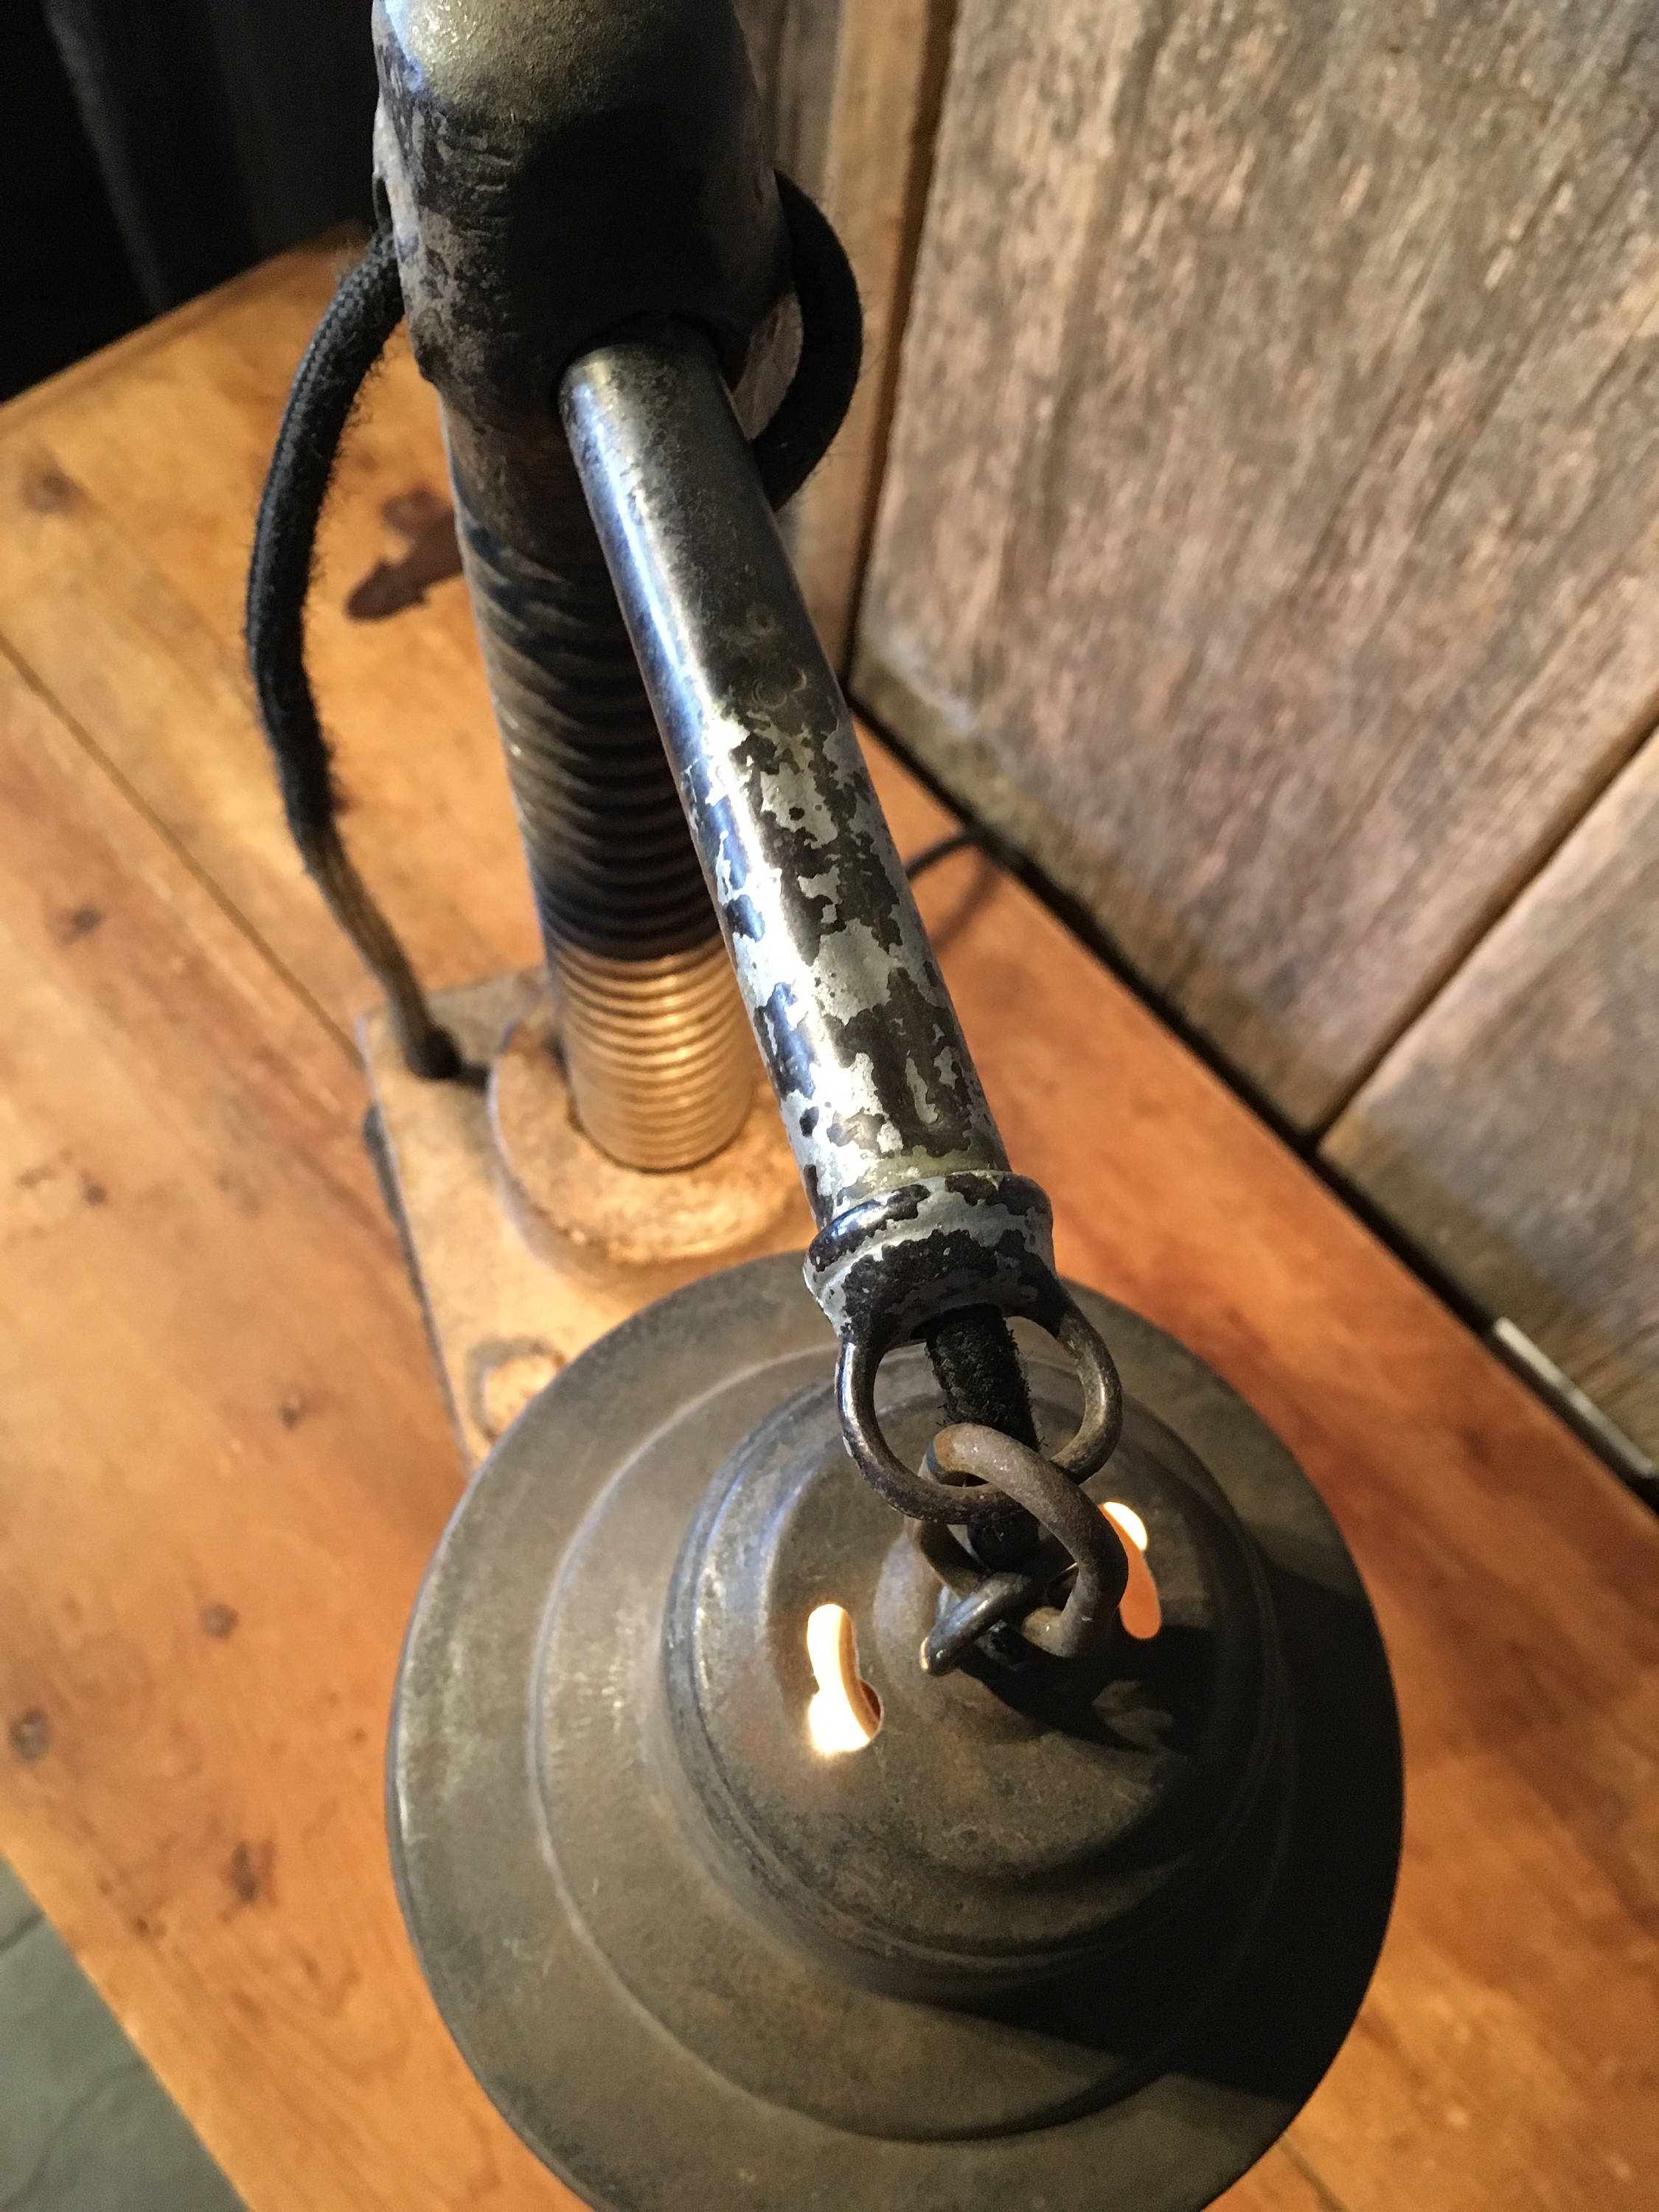 Railroad Jack Lamp | Vintage 1800s